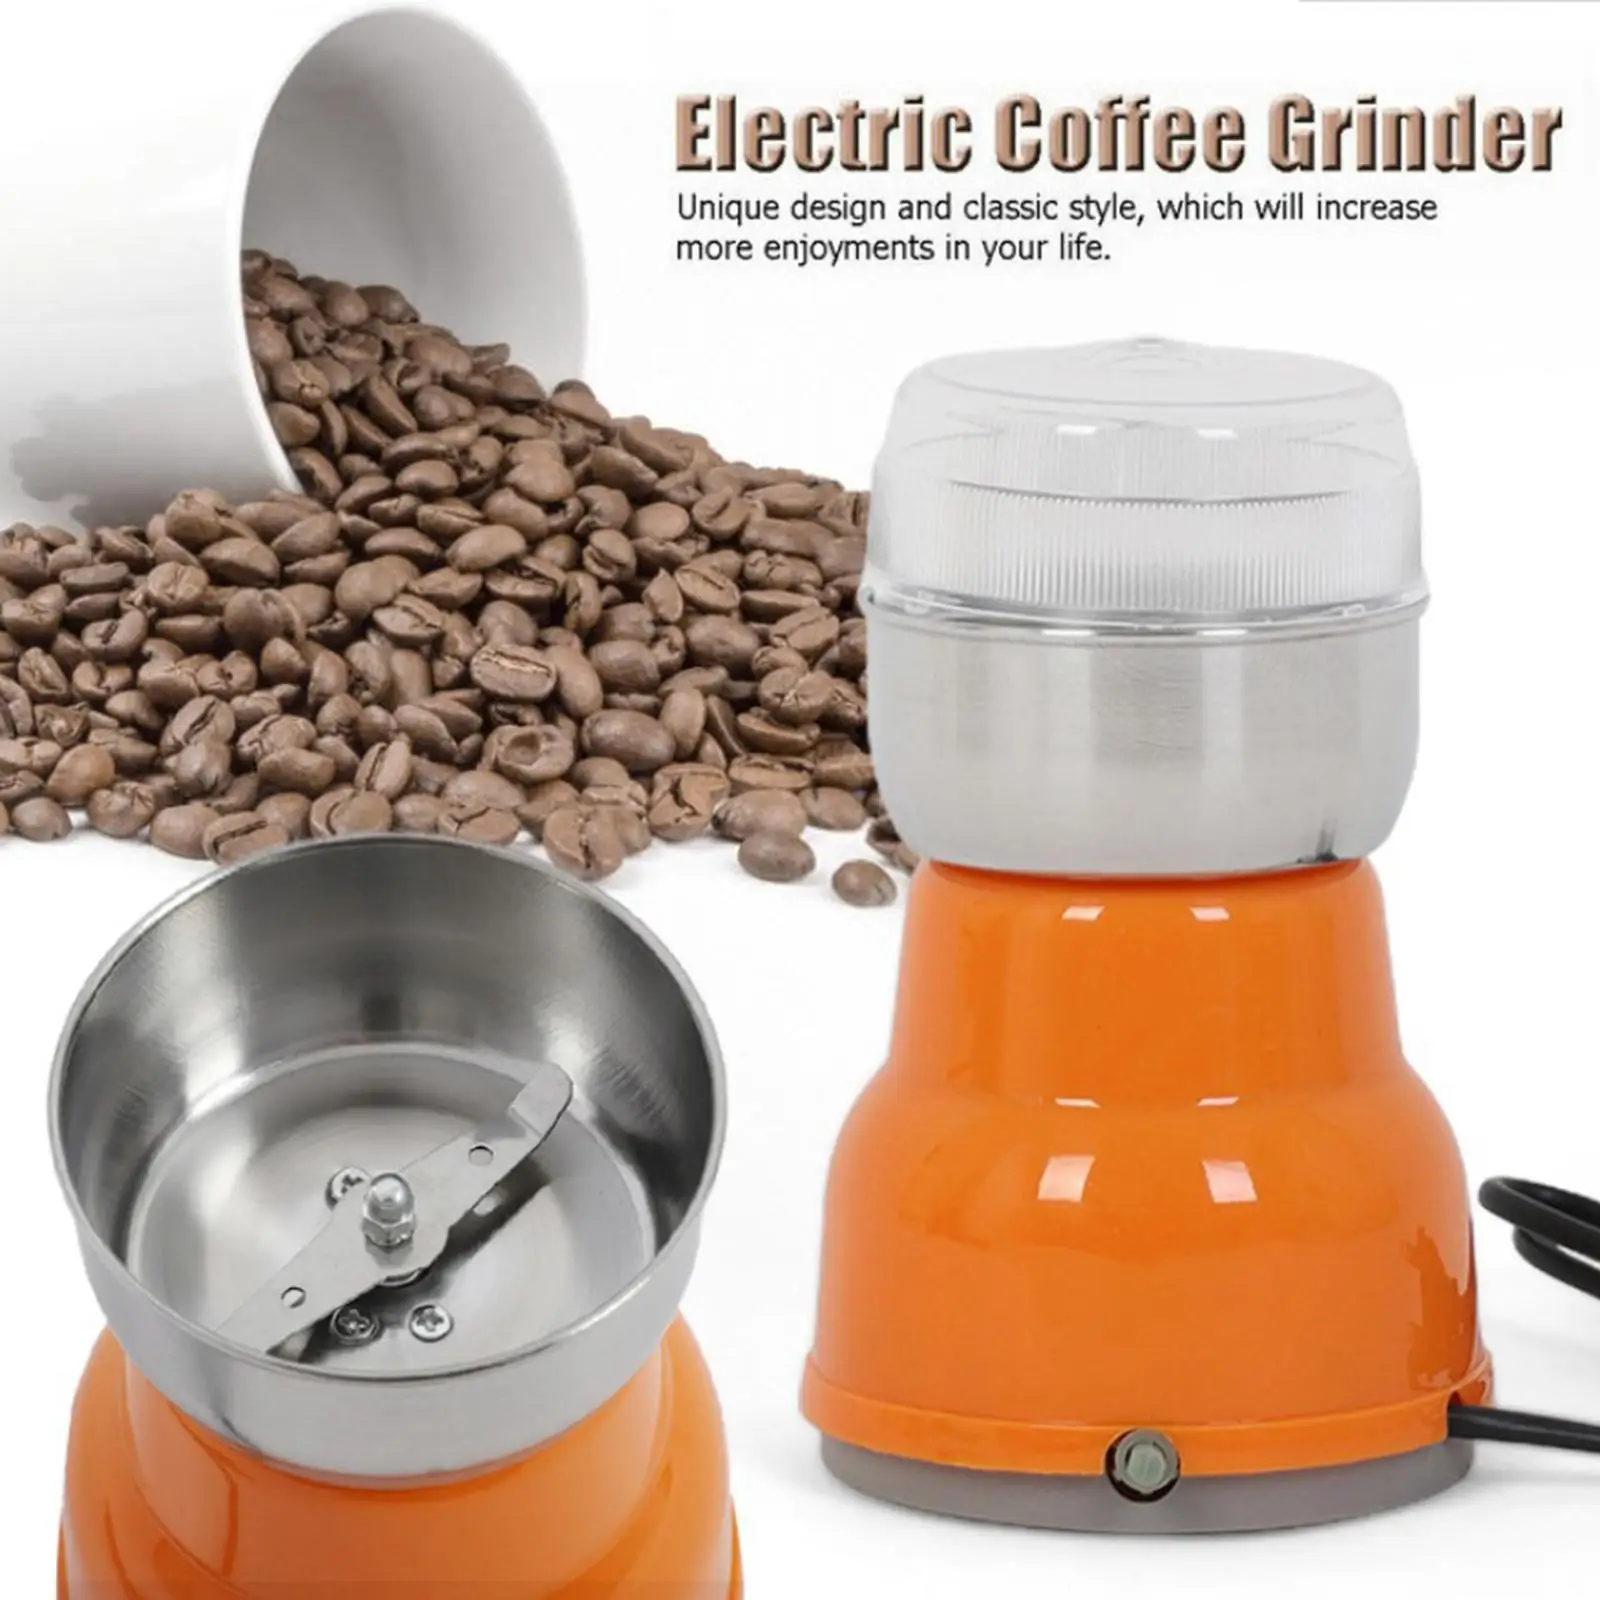 https://ae01.alicdn.com/kf/S7f0e7db92631425c9467cb534cdd3b8bw/Electric-Coffee-Bean-Grinder-Stainless-Steel-Nuts-Grains-Herb-Grinder-For-Household-Coffee-And-Multi-Grain.jpg